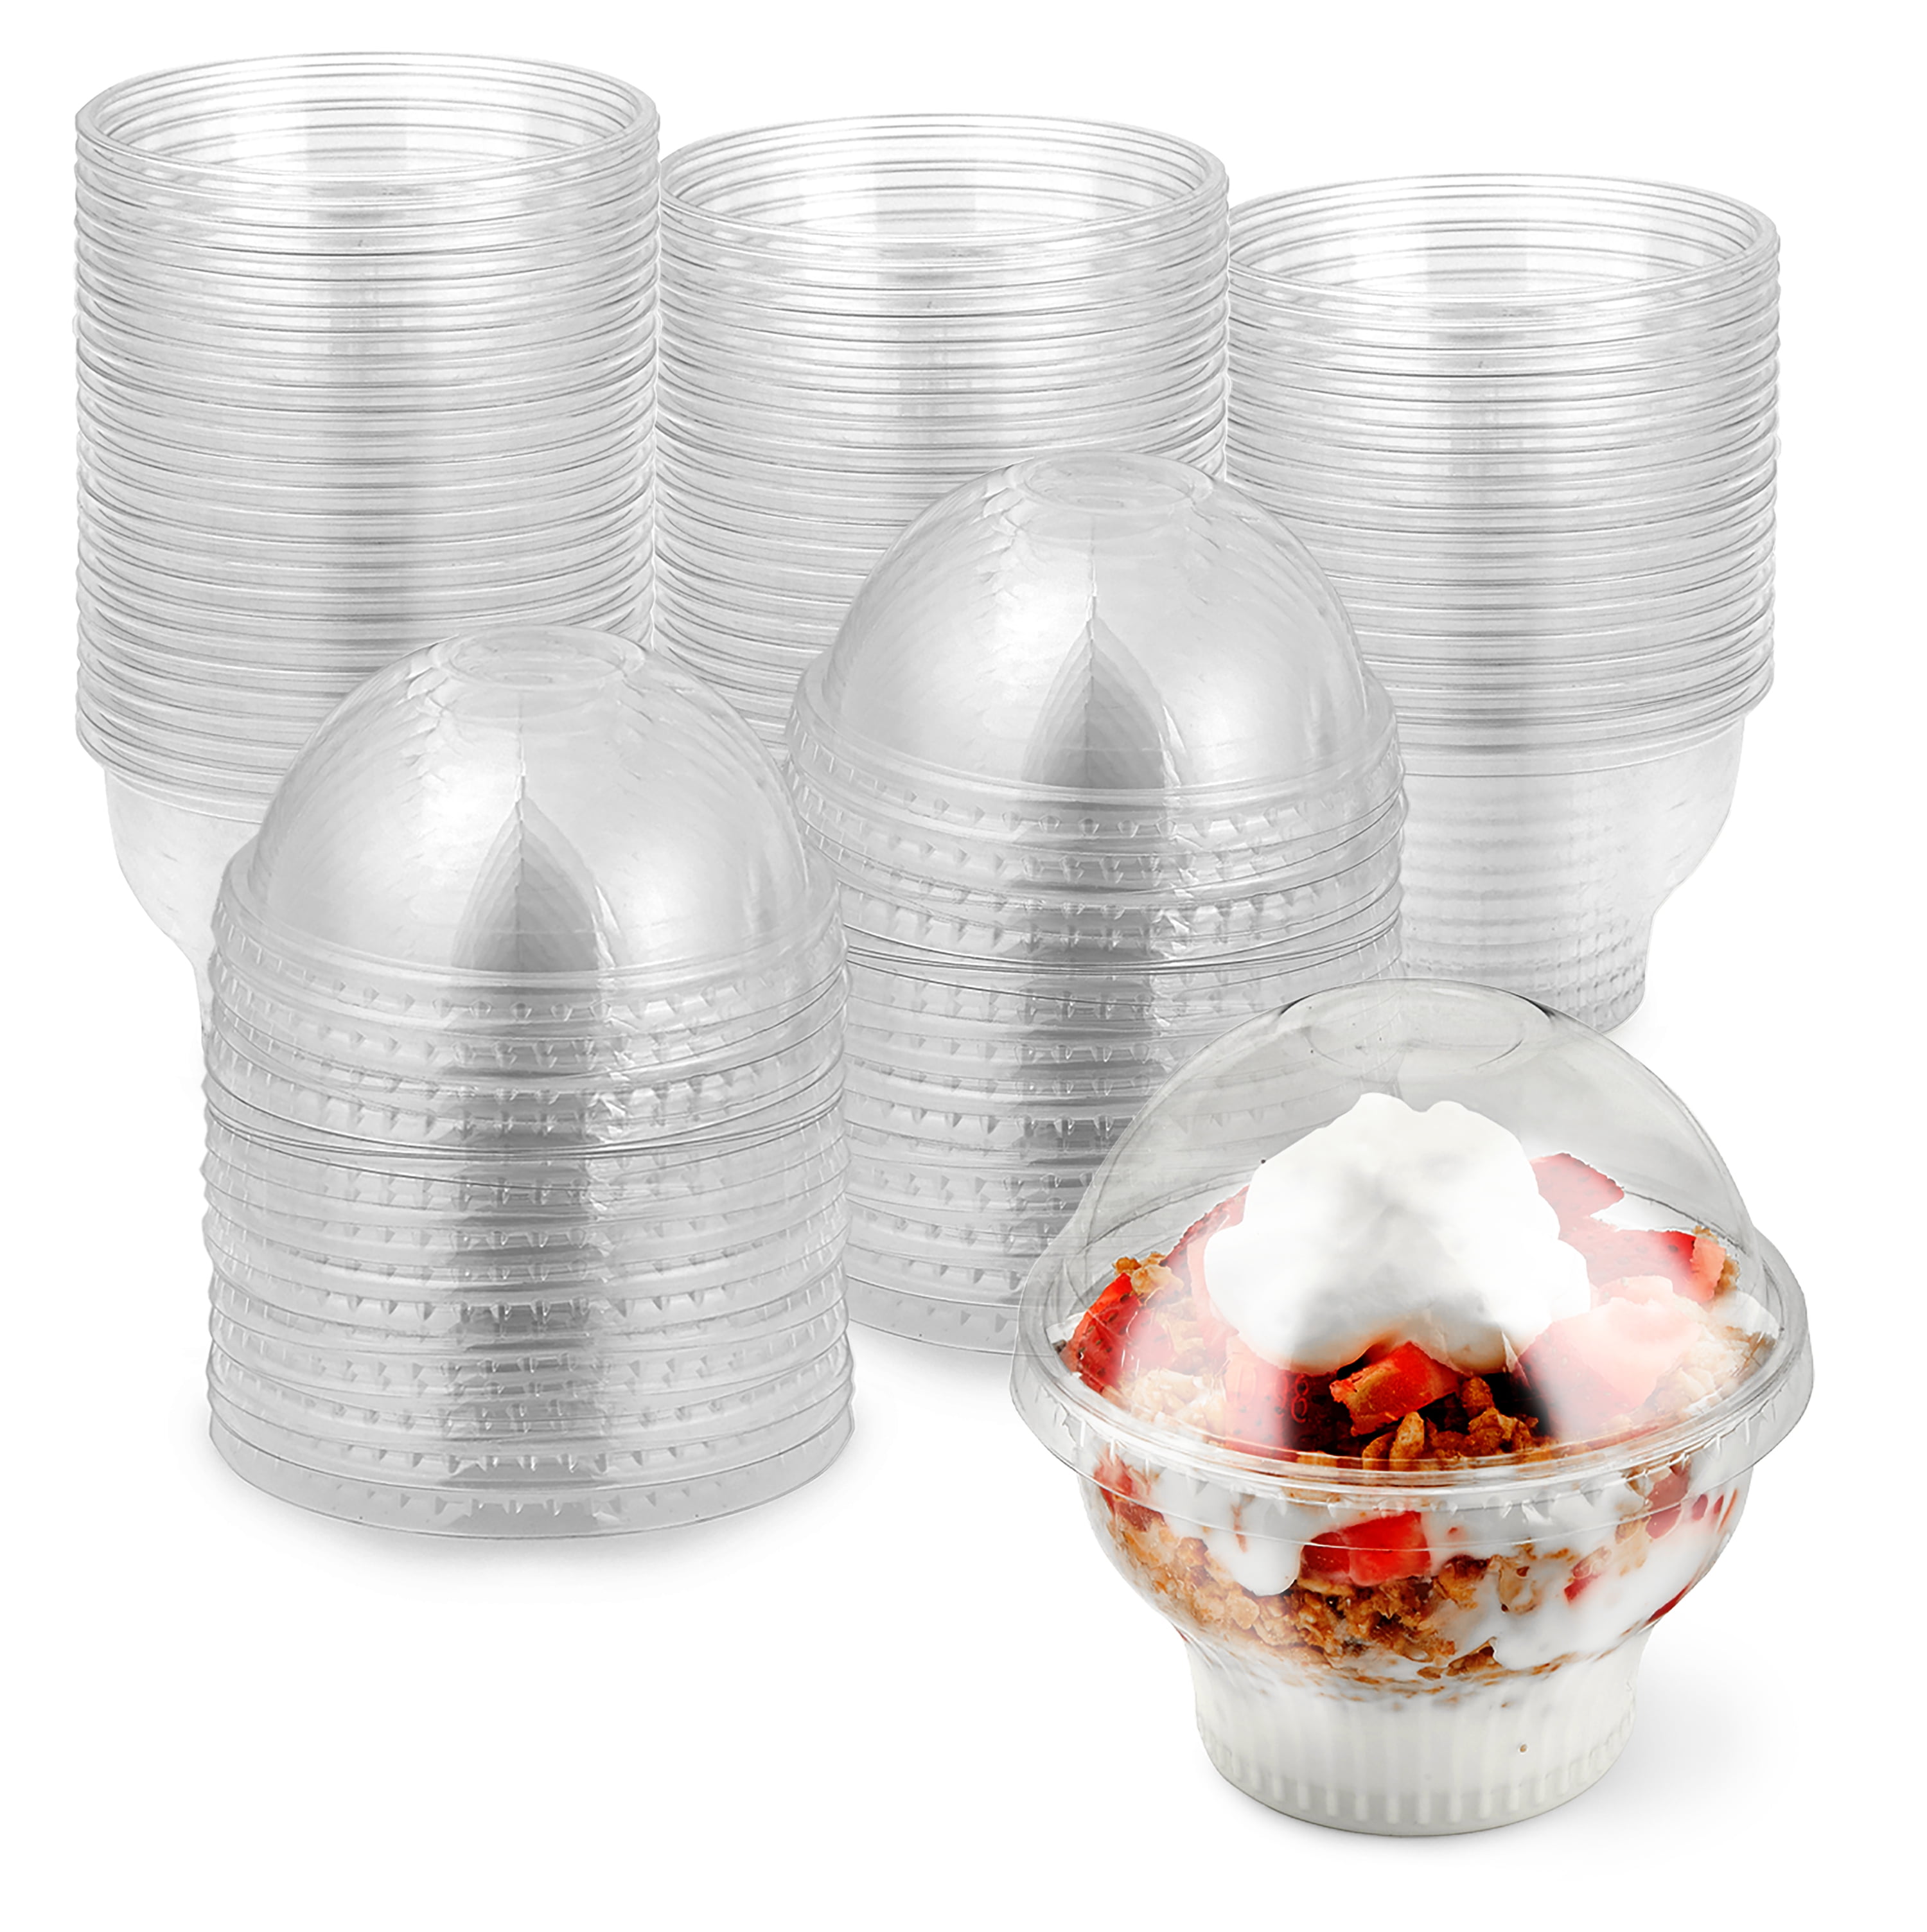 6oz plastic dessert cups - 8 count